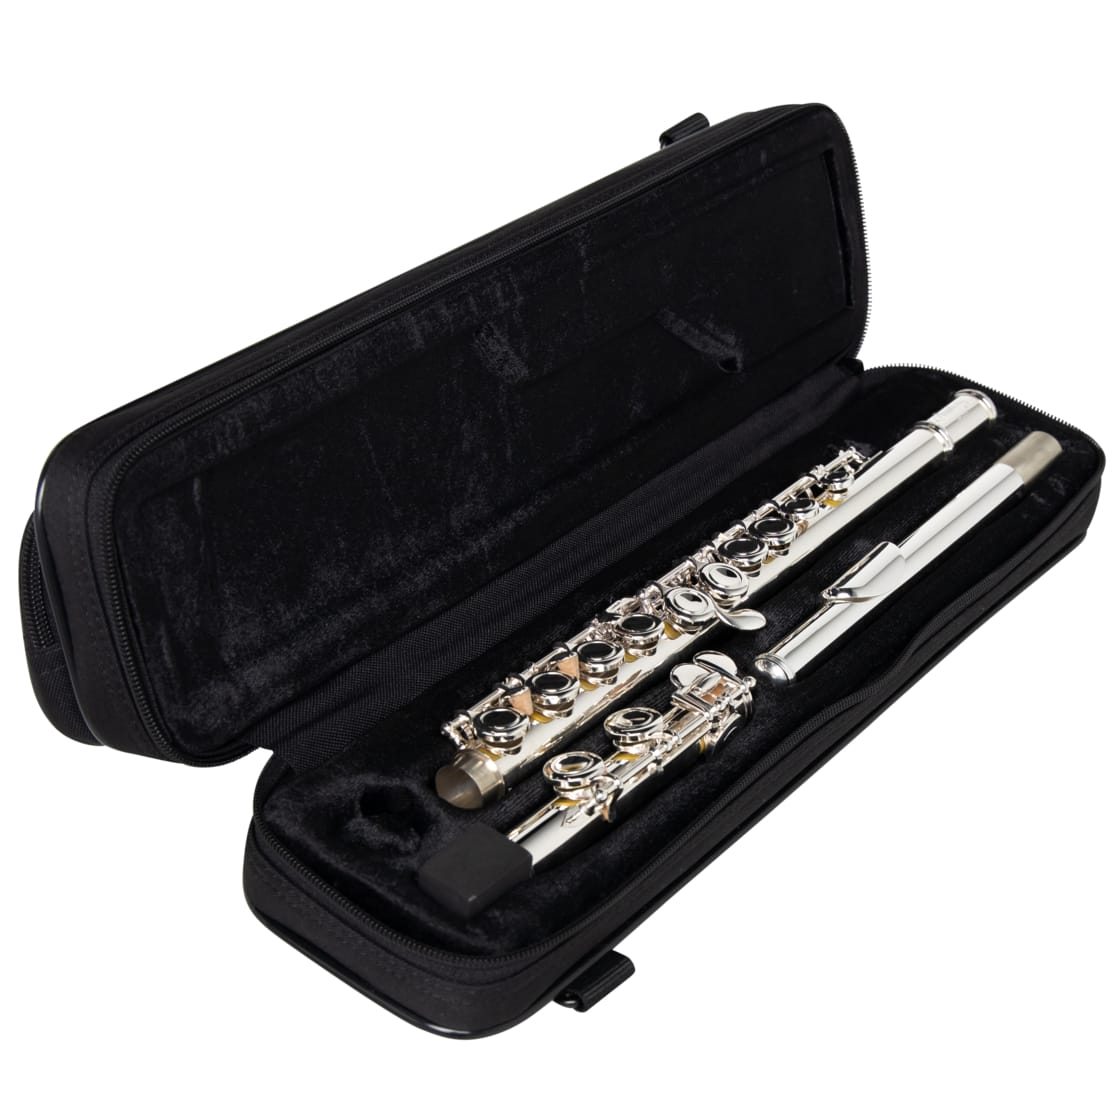 Lightweight Beginner Case for Flute